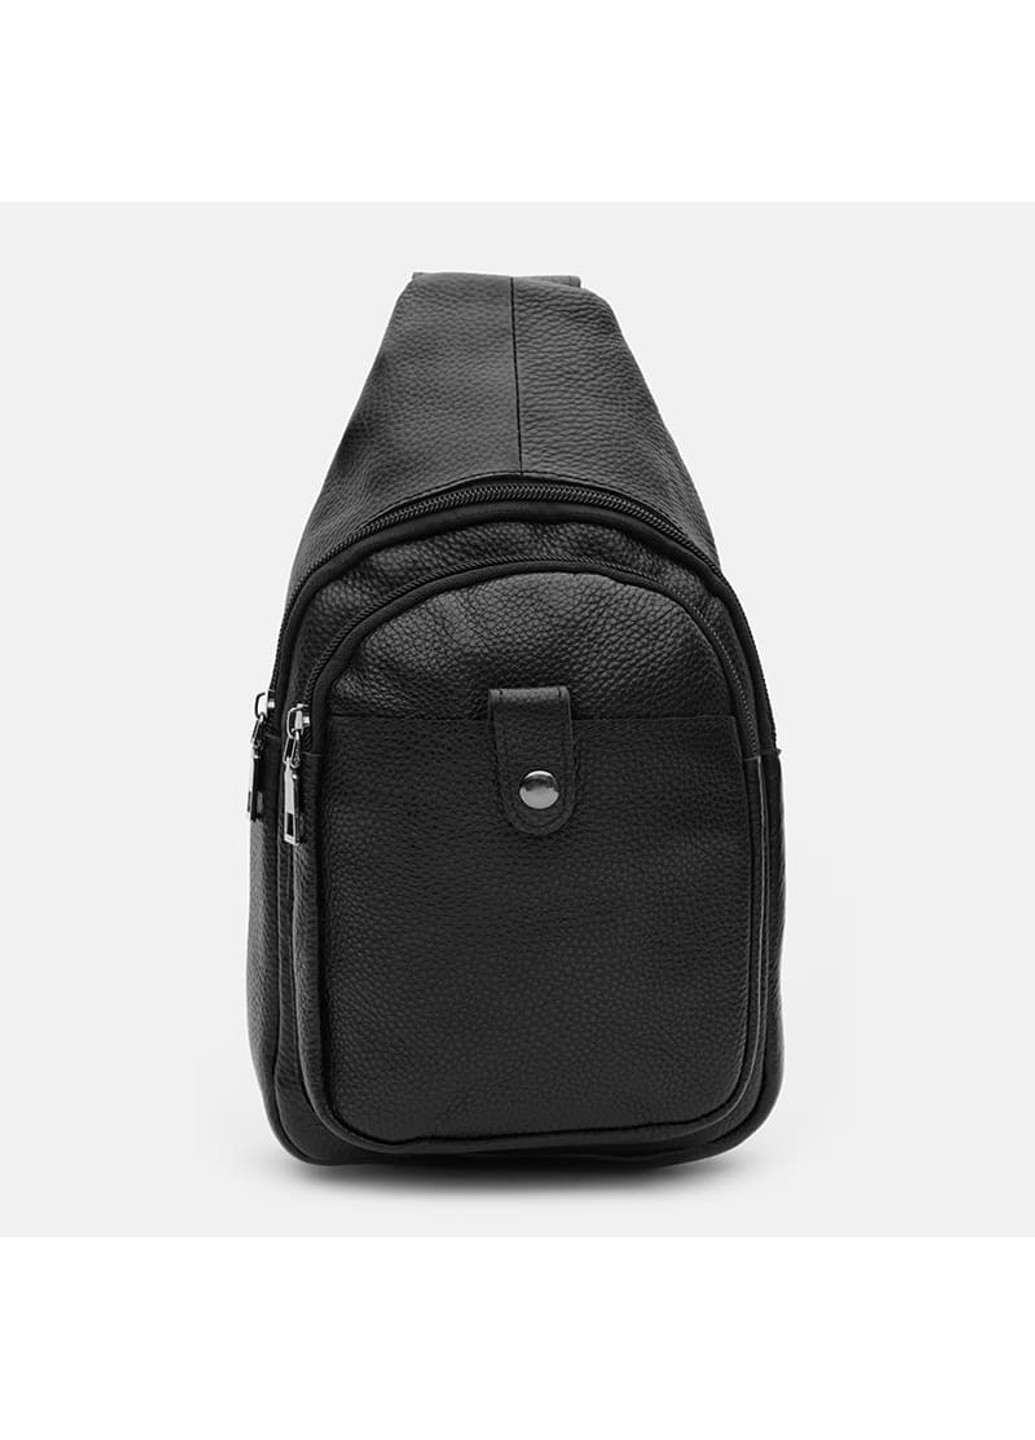 Мужской кожаный рюкзак K1084bl-black Keizer (266143456)